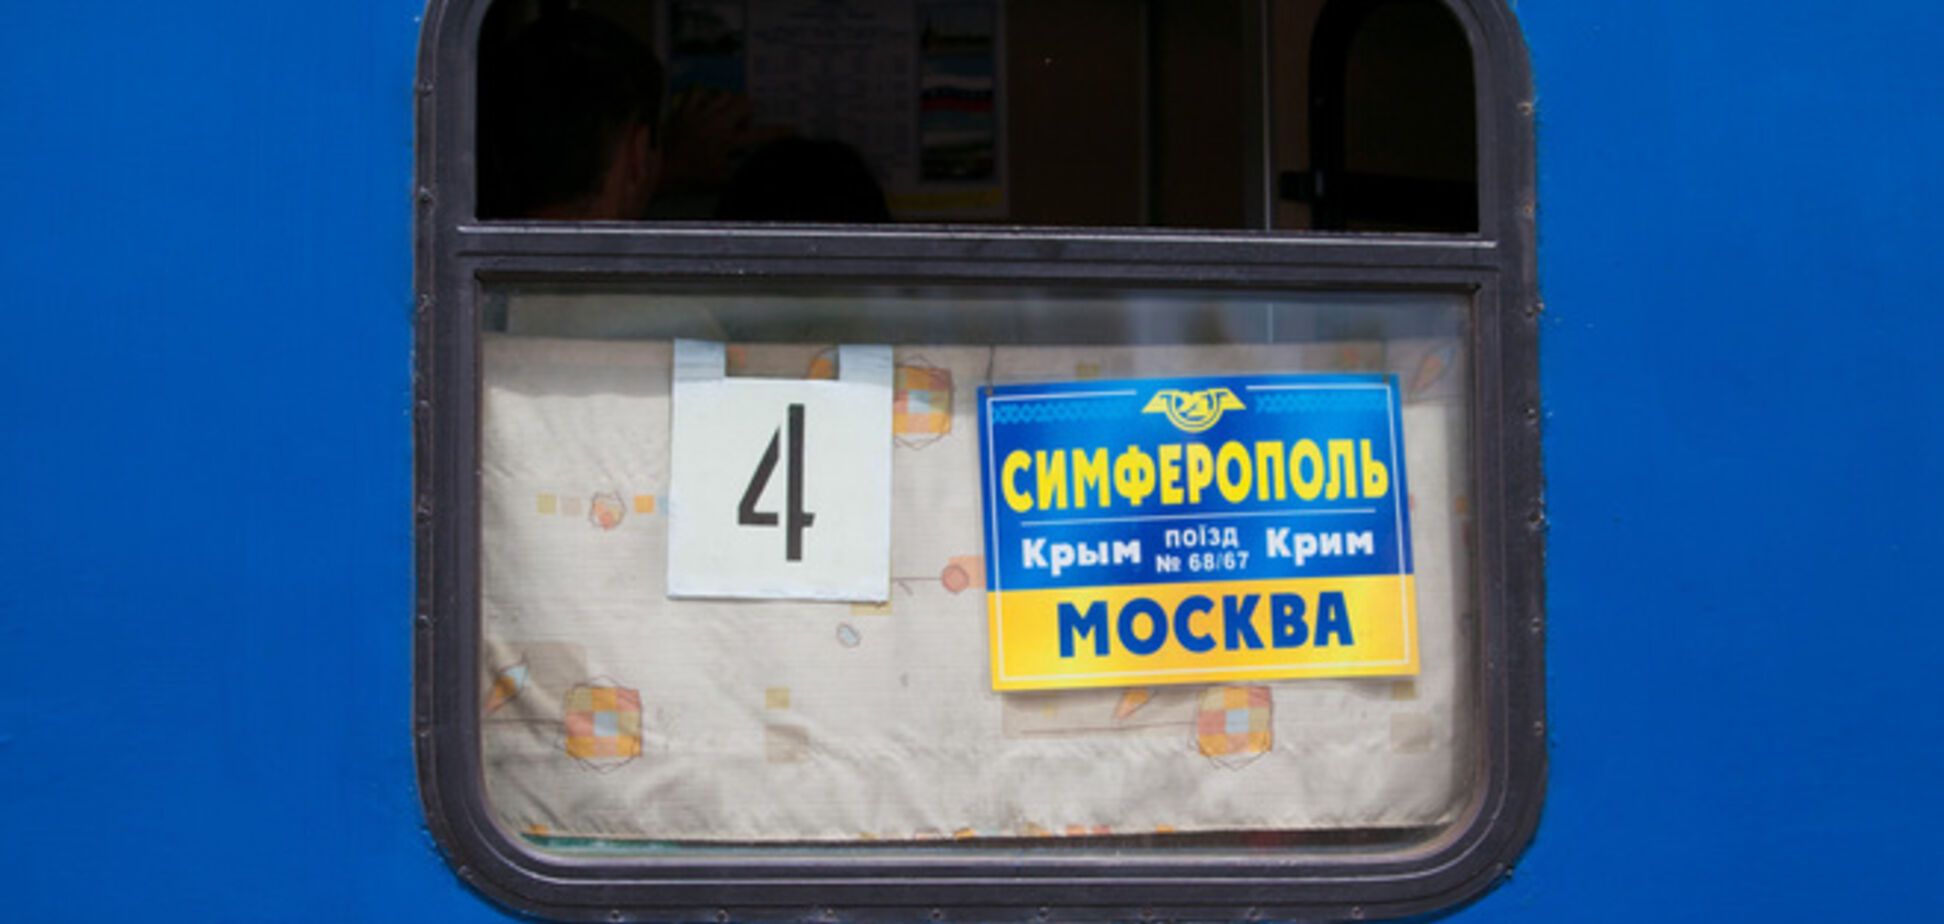 Первый поезд 'Симферополь-Москва' уехал полупустым